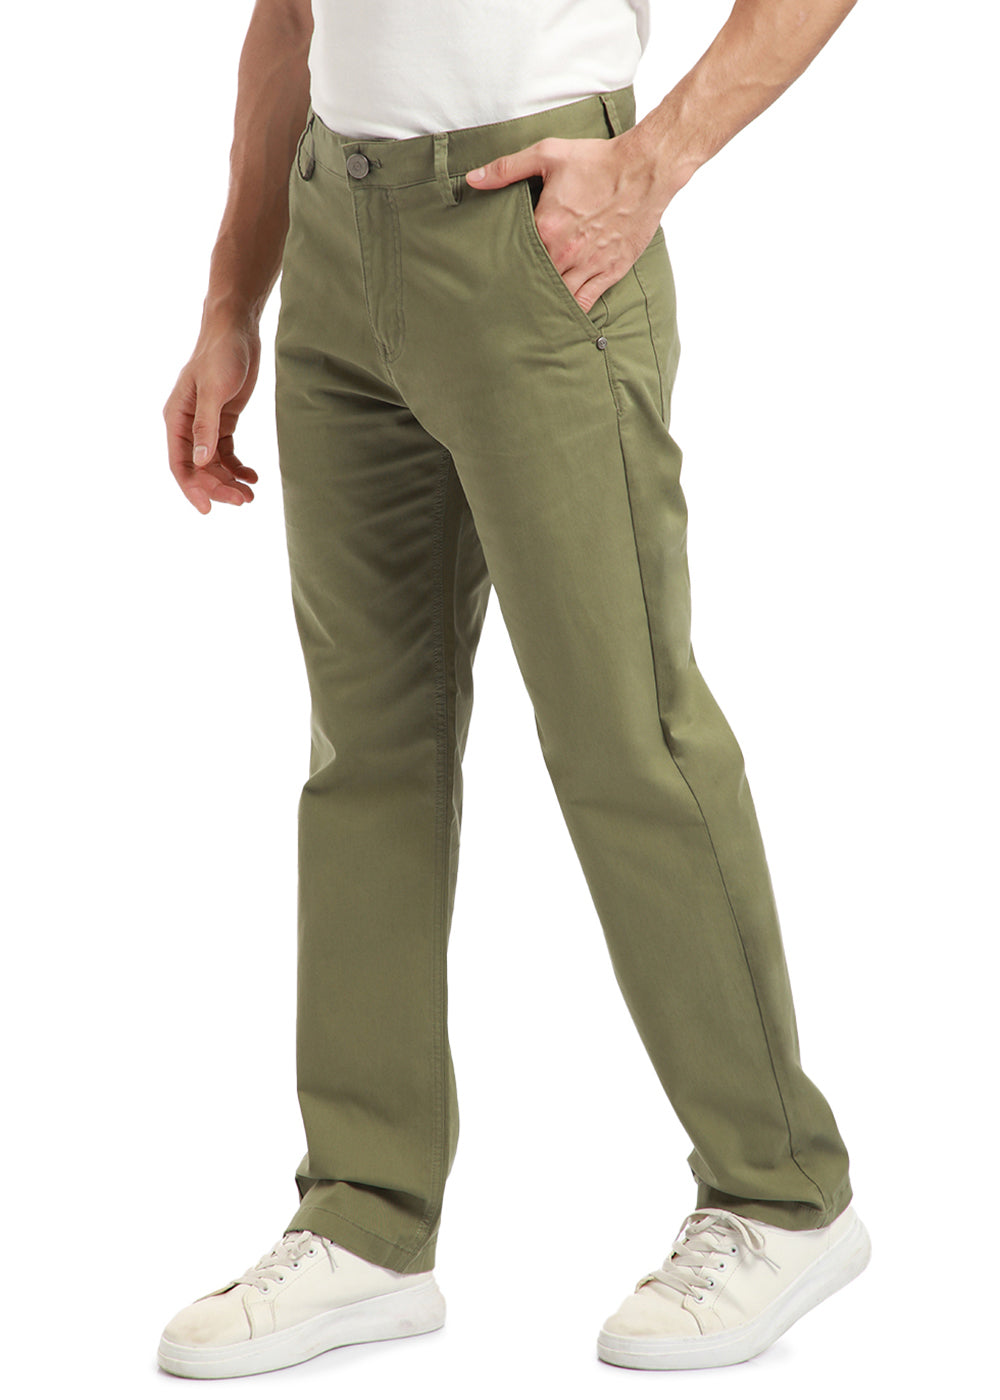 Olive Green Carpenter Pants